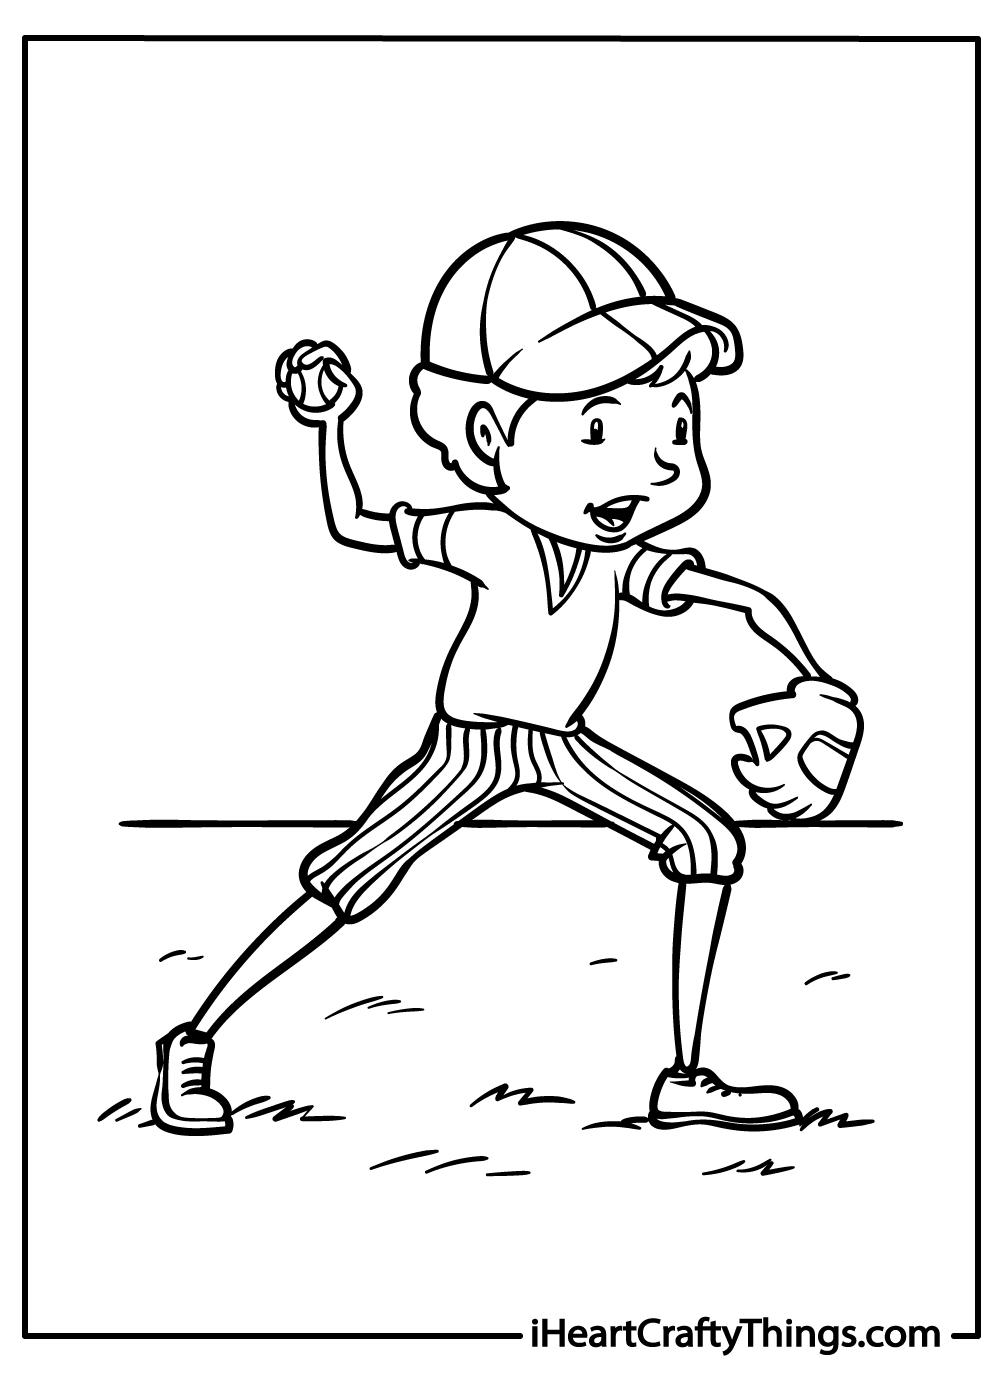 baseball coloring printable for kids